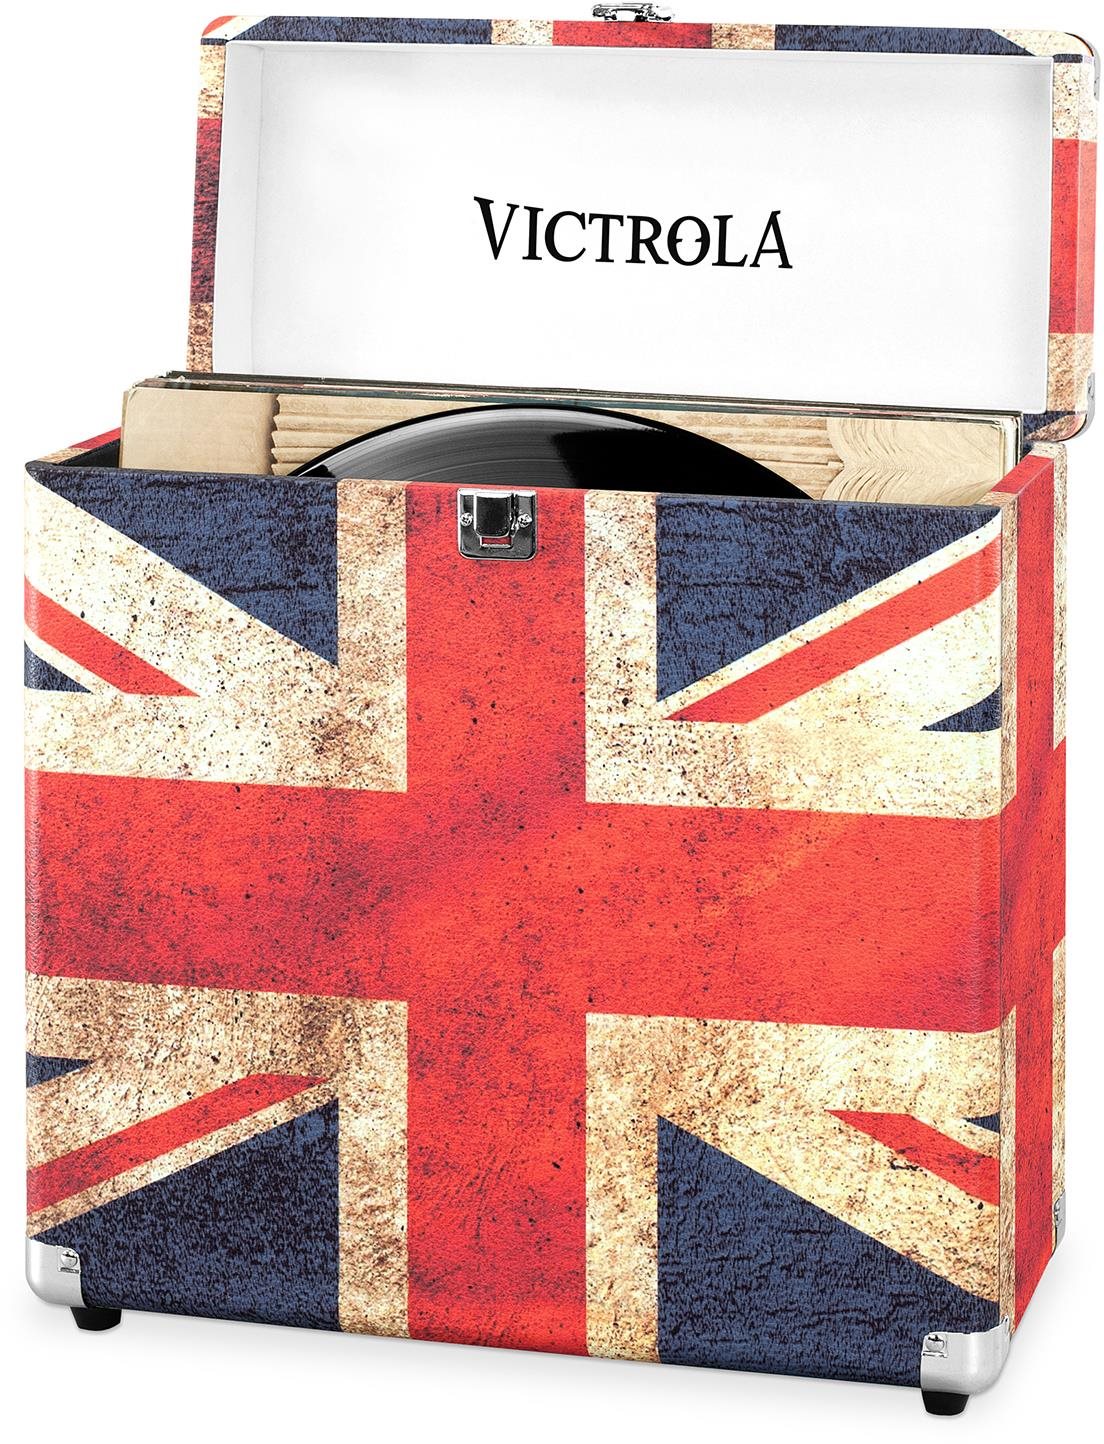 Bakelit lemez tartó Victrola VSC-20 UK